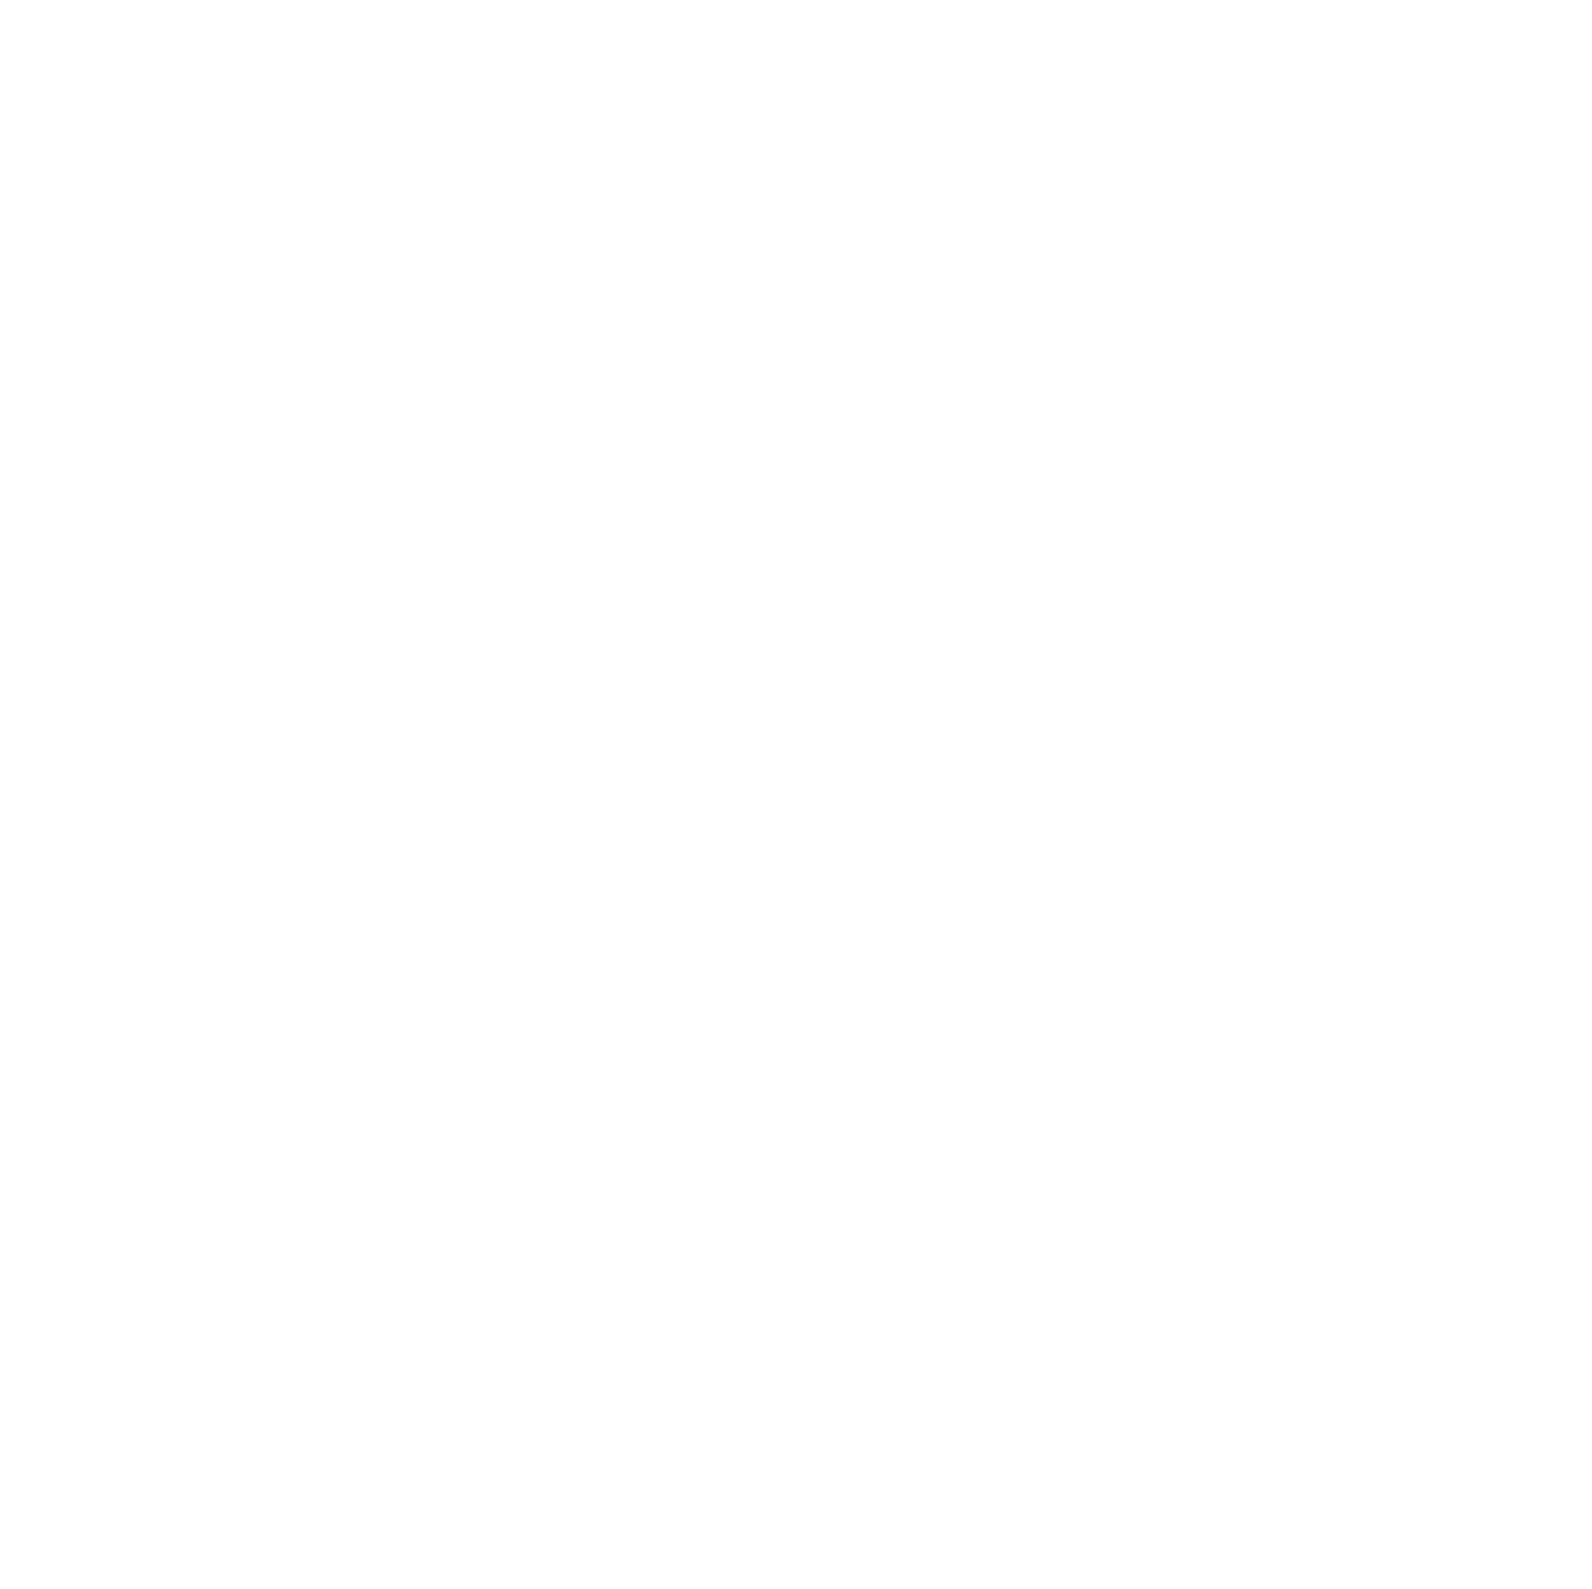 abrdn logo pour fonds sombres (PNG transparent)